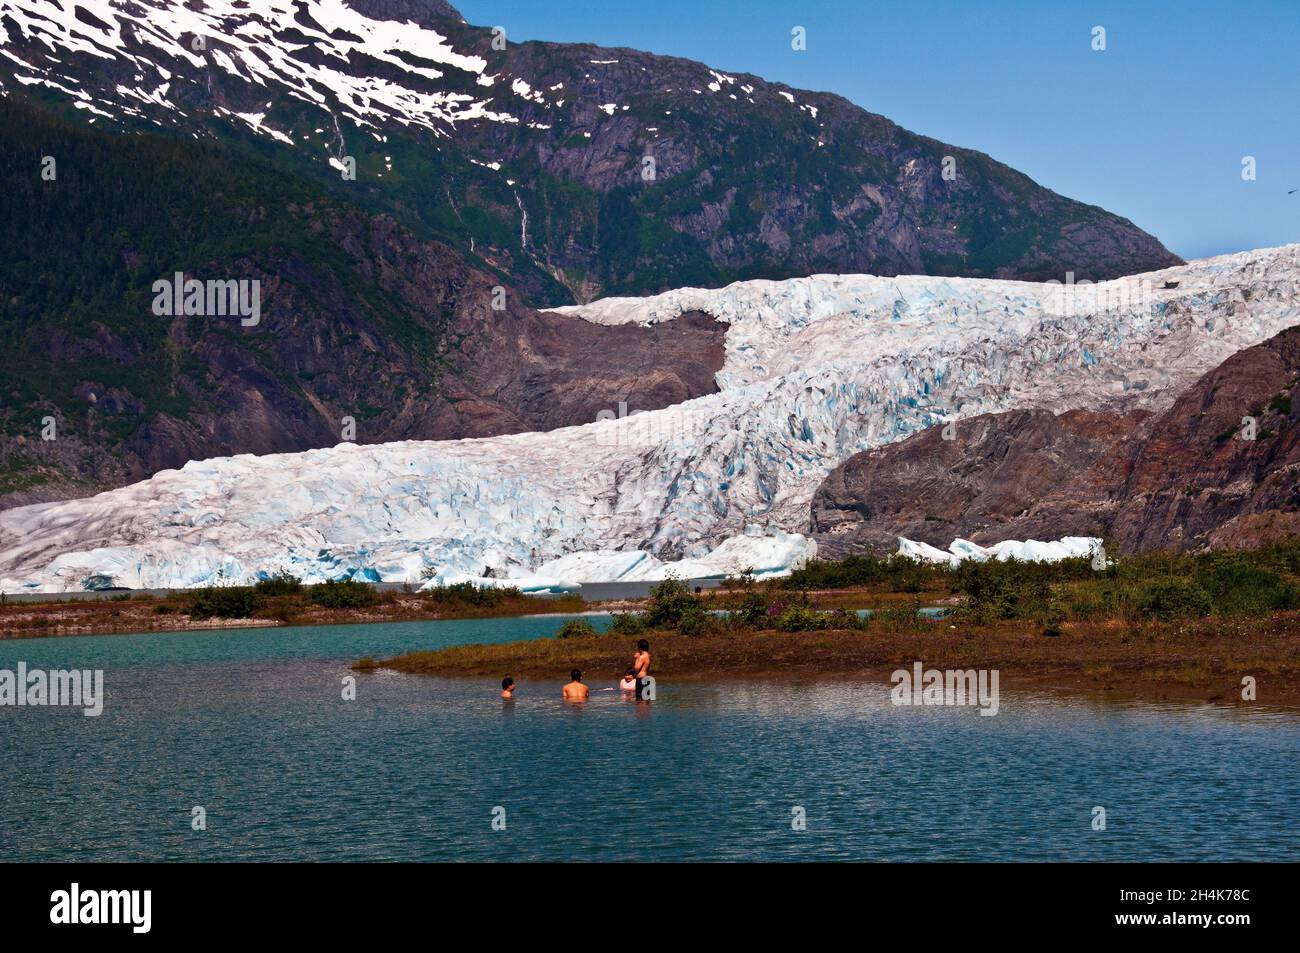 Quatre garçons nageant dans des eaux glacielles sous le glacier Mendenhall, Juneau, Alaska Banque D'Images